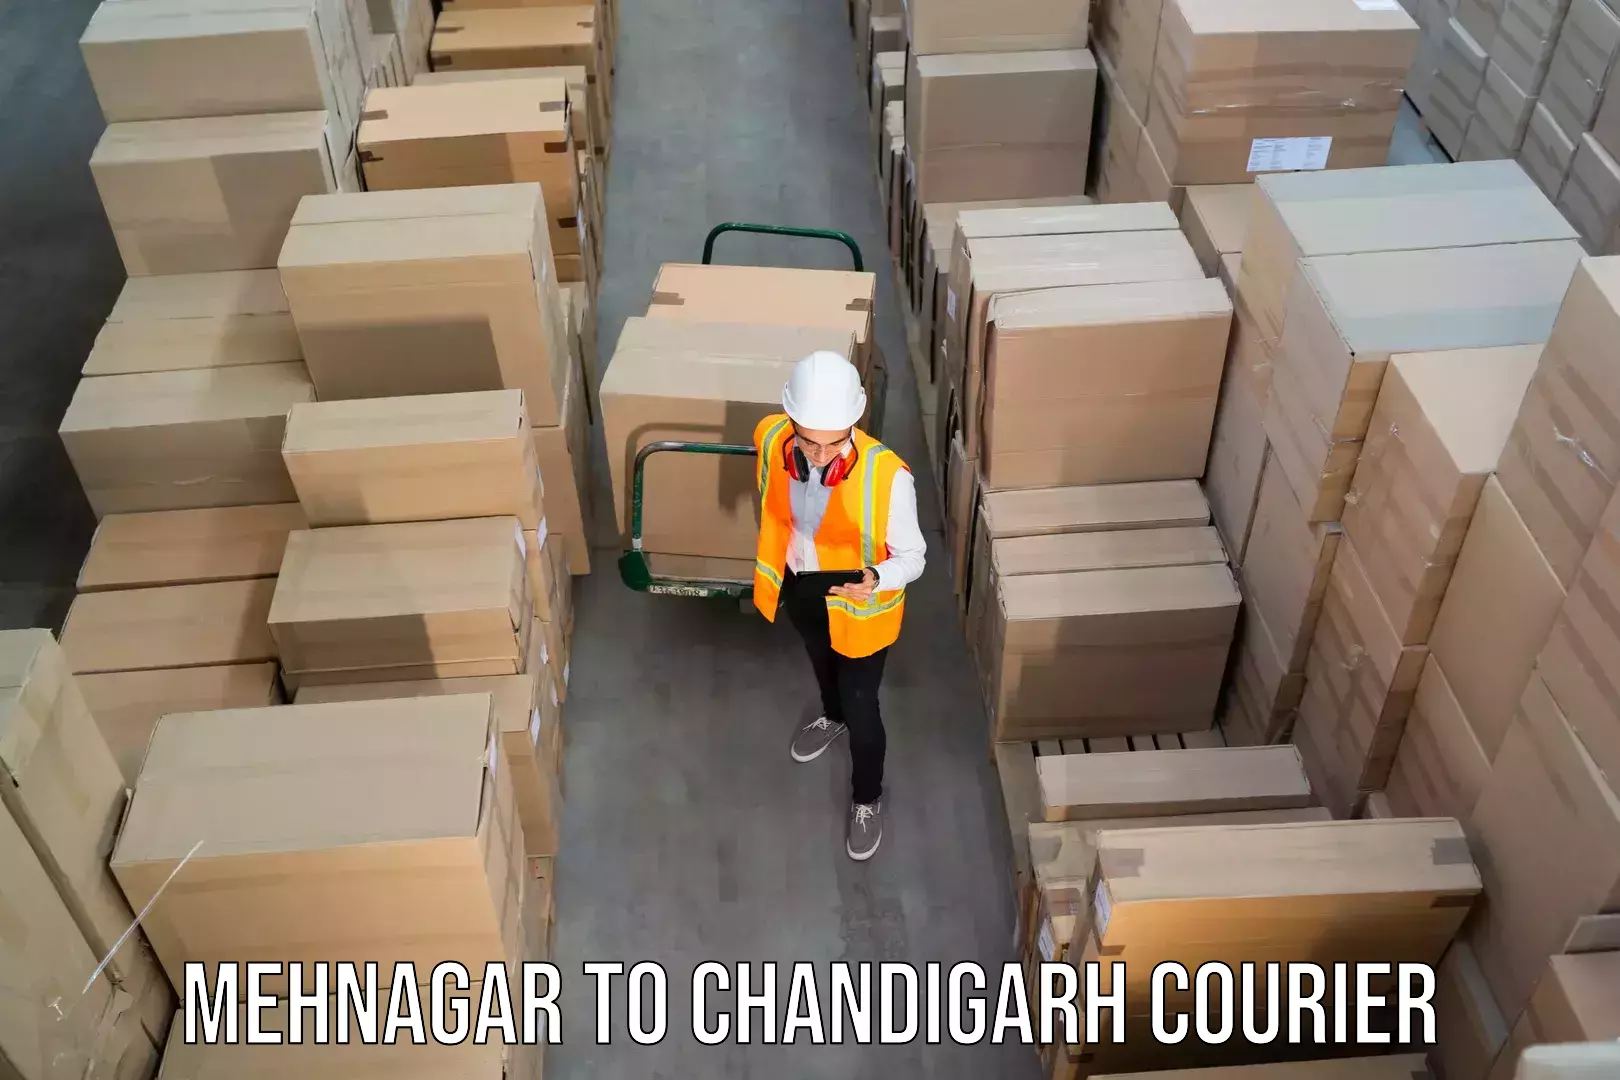 Flexible delivery schedules Mehnagar to Chandigarh